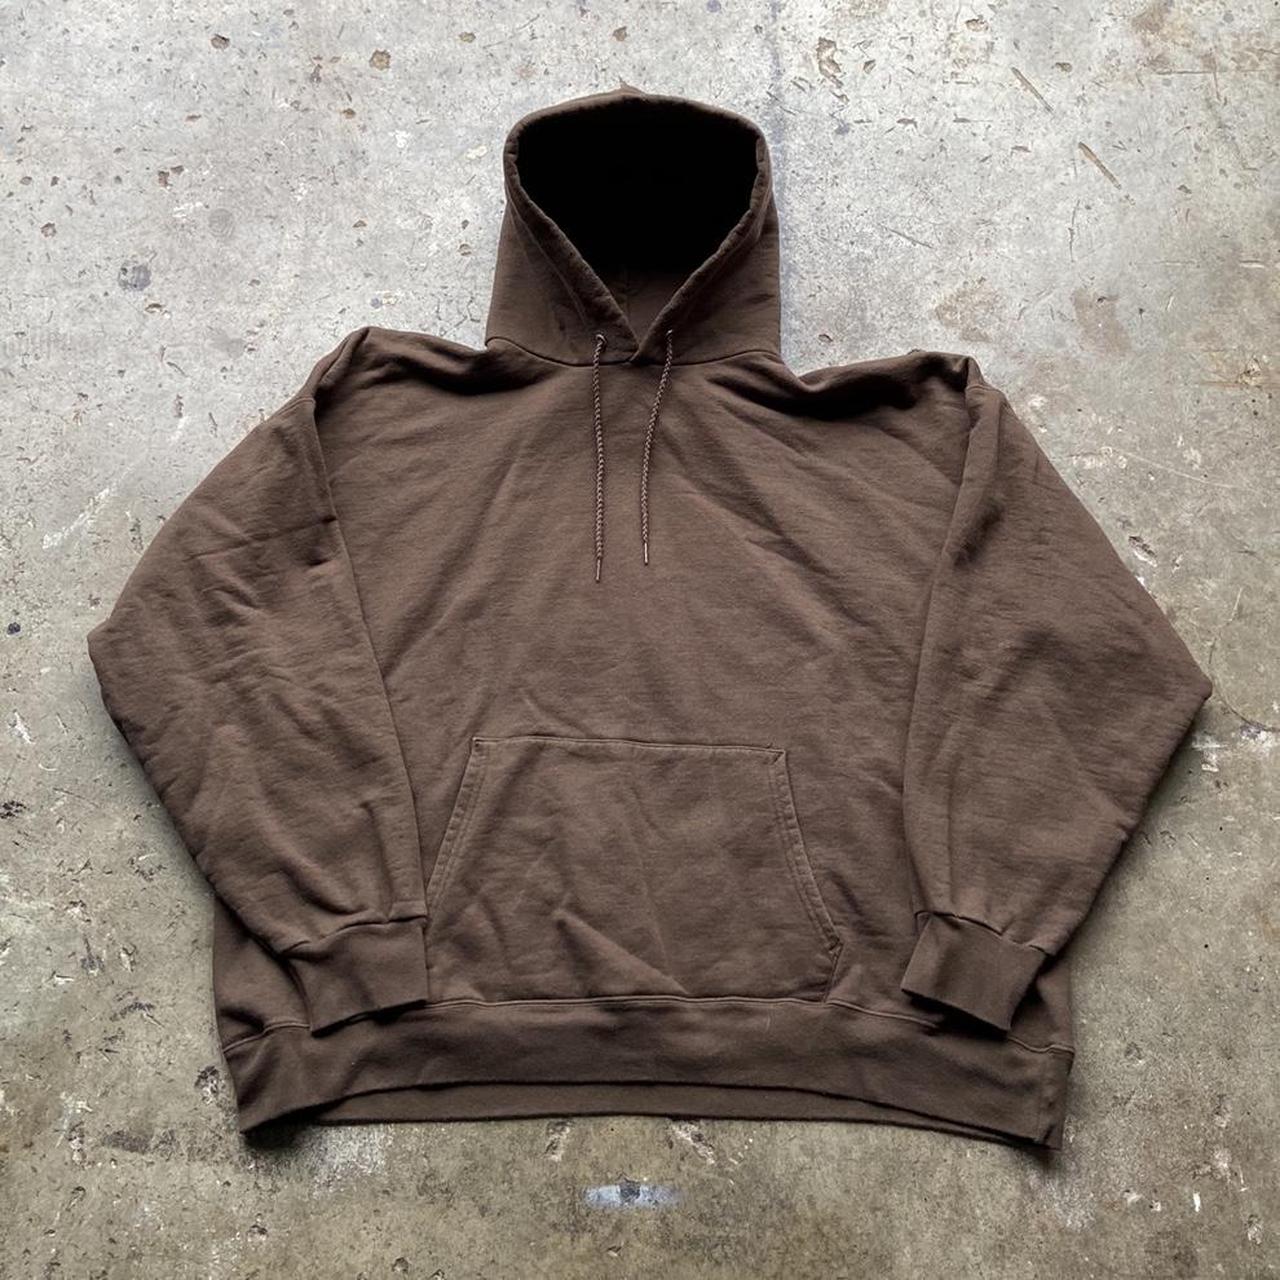 Vintage y2k essential chocolate brown hoodie! Size... - Depop